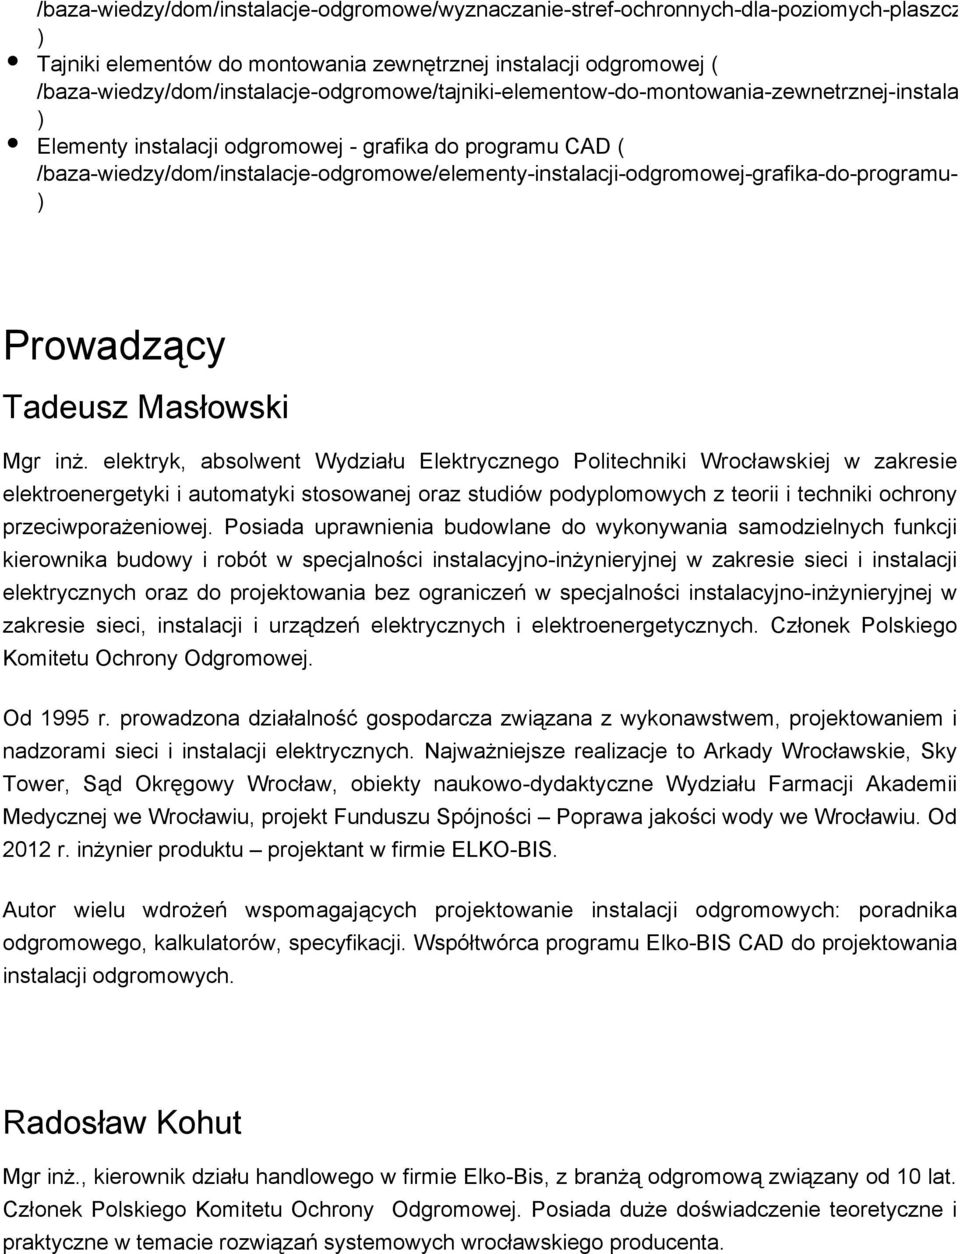 /baza-wiedzy/dom/instalacje-odgromowe/elementy-instalacji-odgromowej-grafika-do-programu-cad Prowadzący Tadeusz Masłowski Mgr inż.